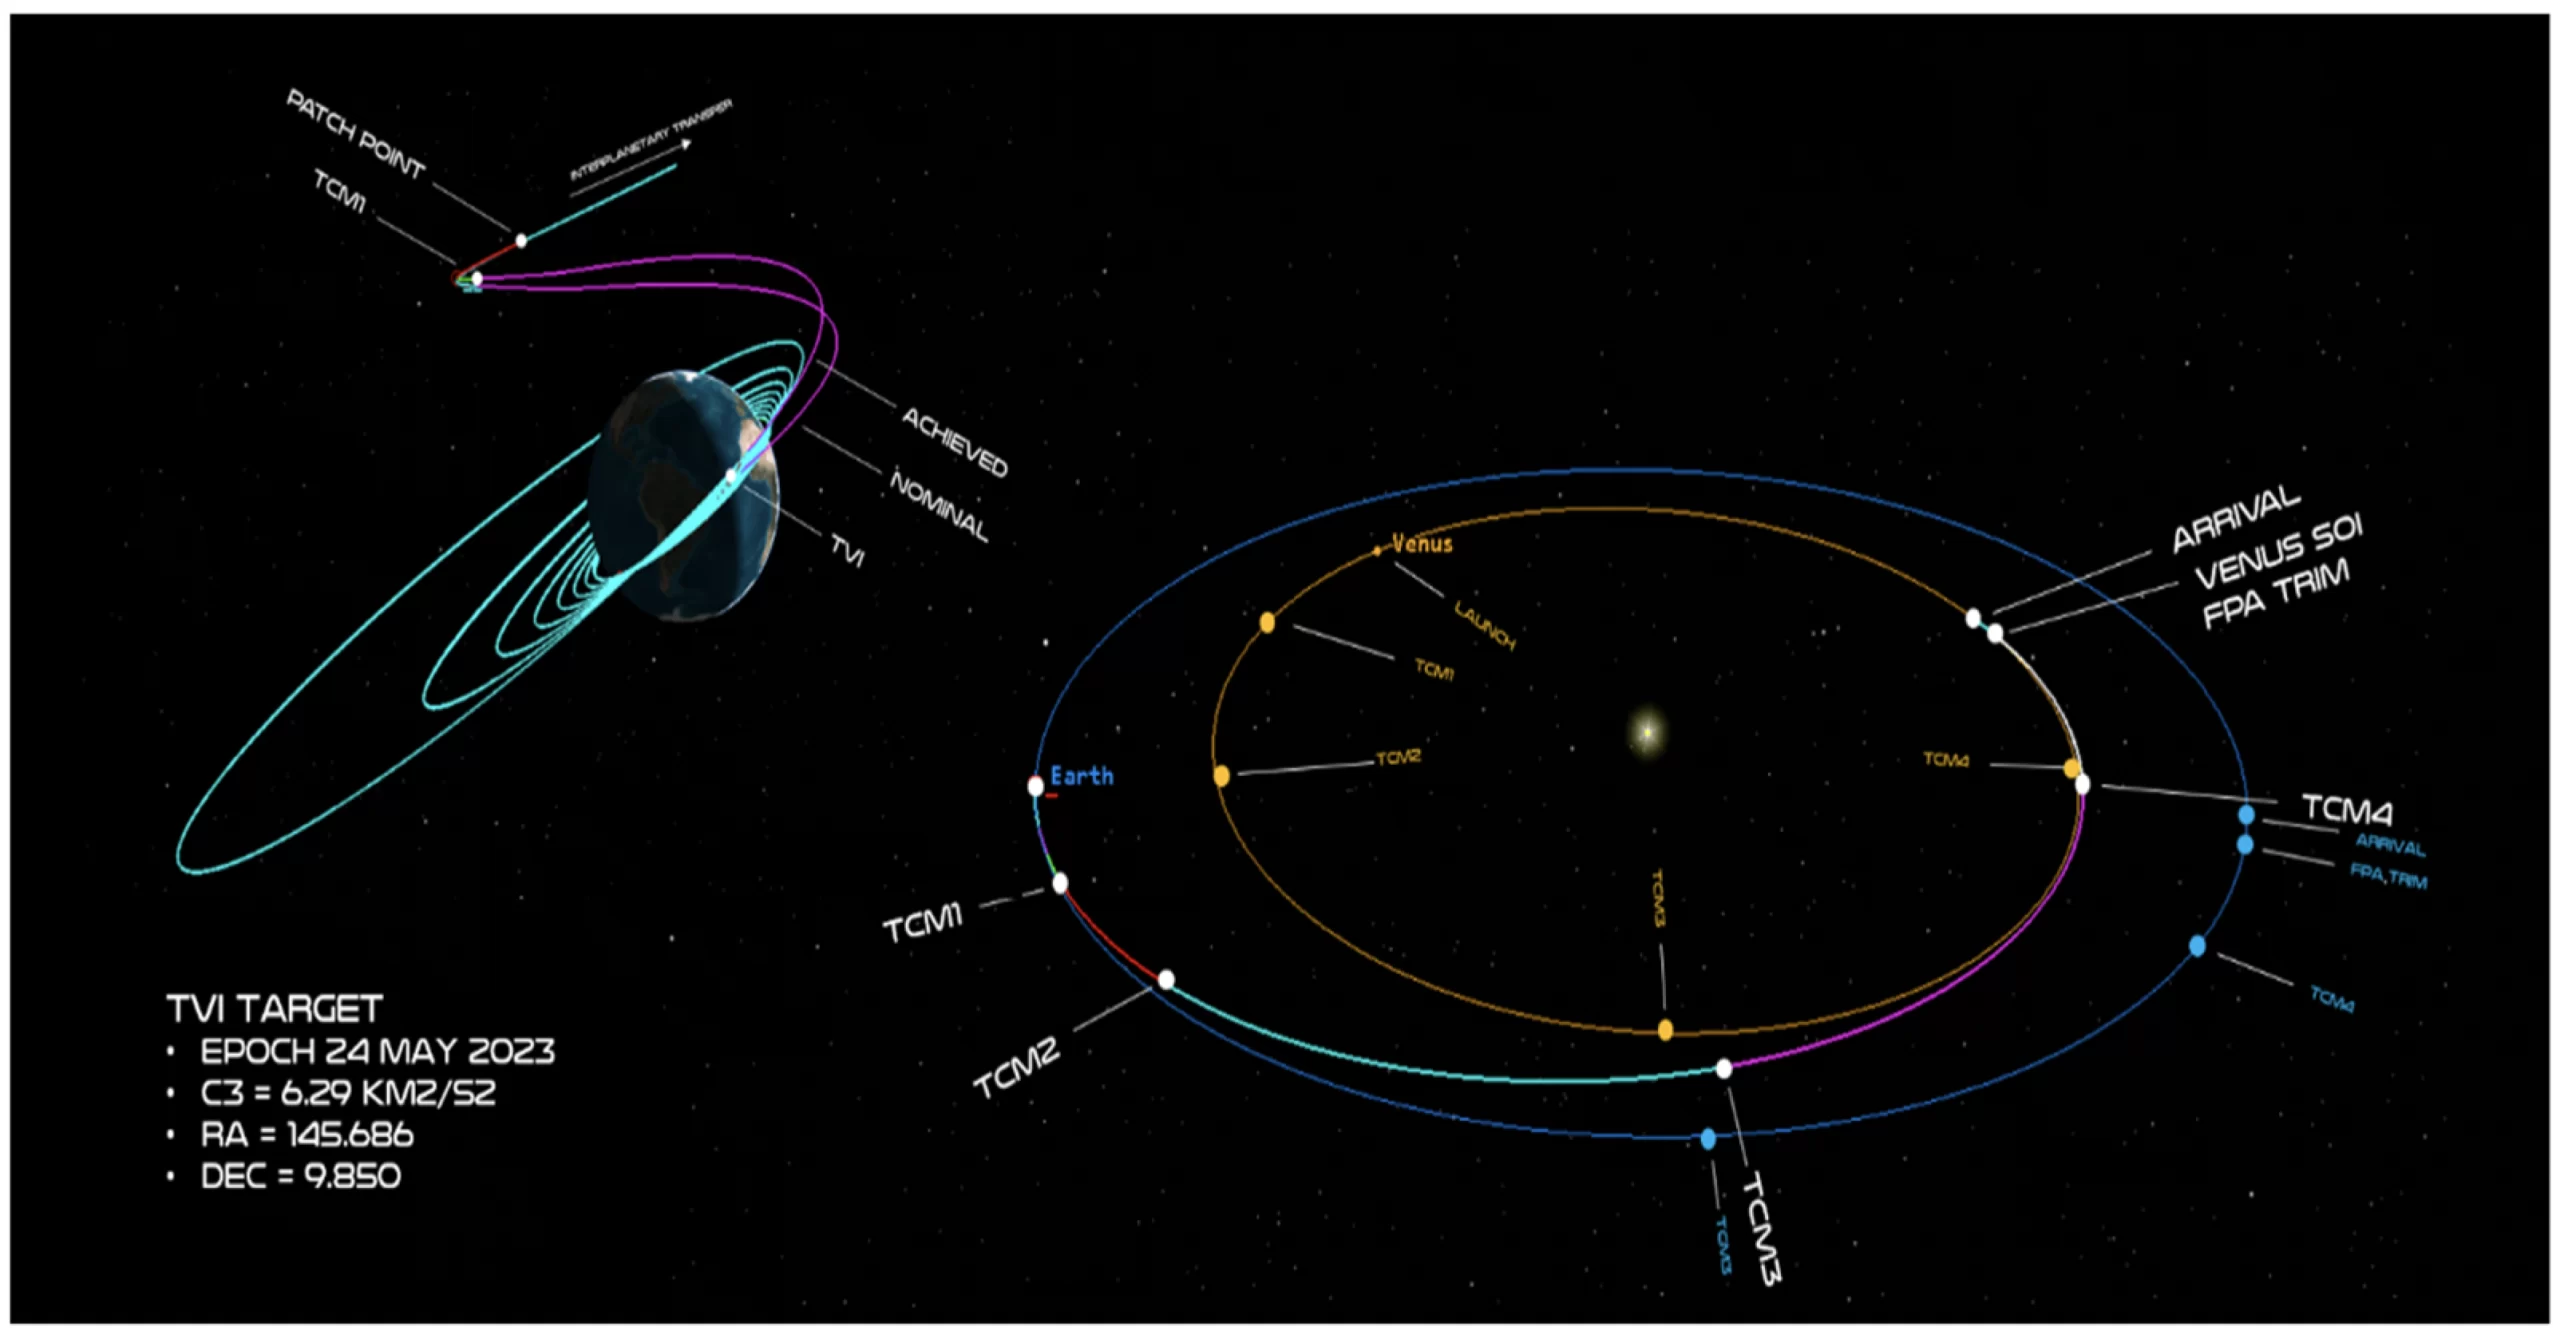 Uno schema della traiettoria di Photon per raggiungere Venere. Credits: Rocket Lab